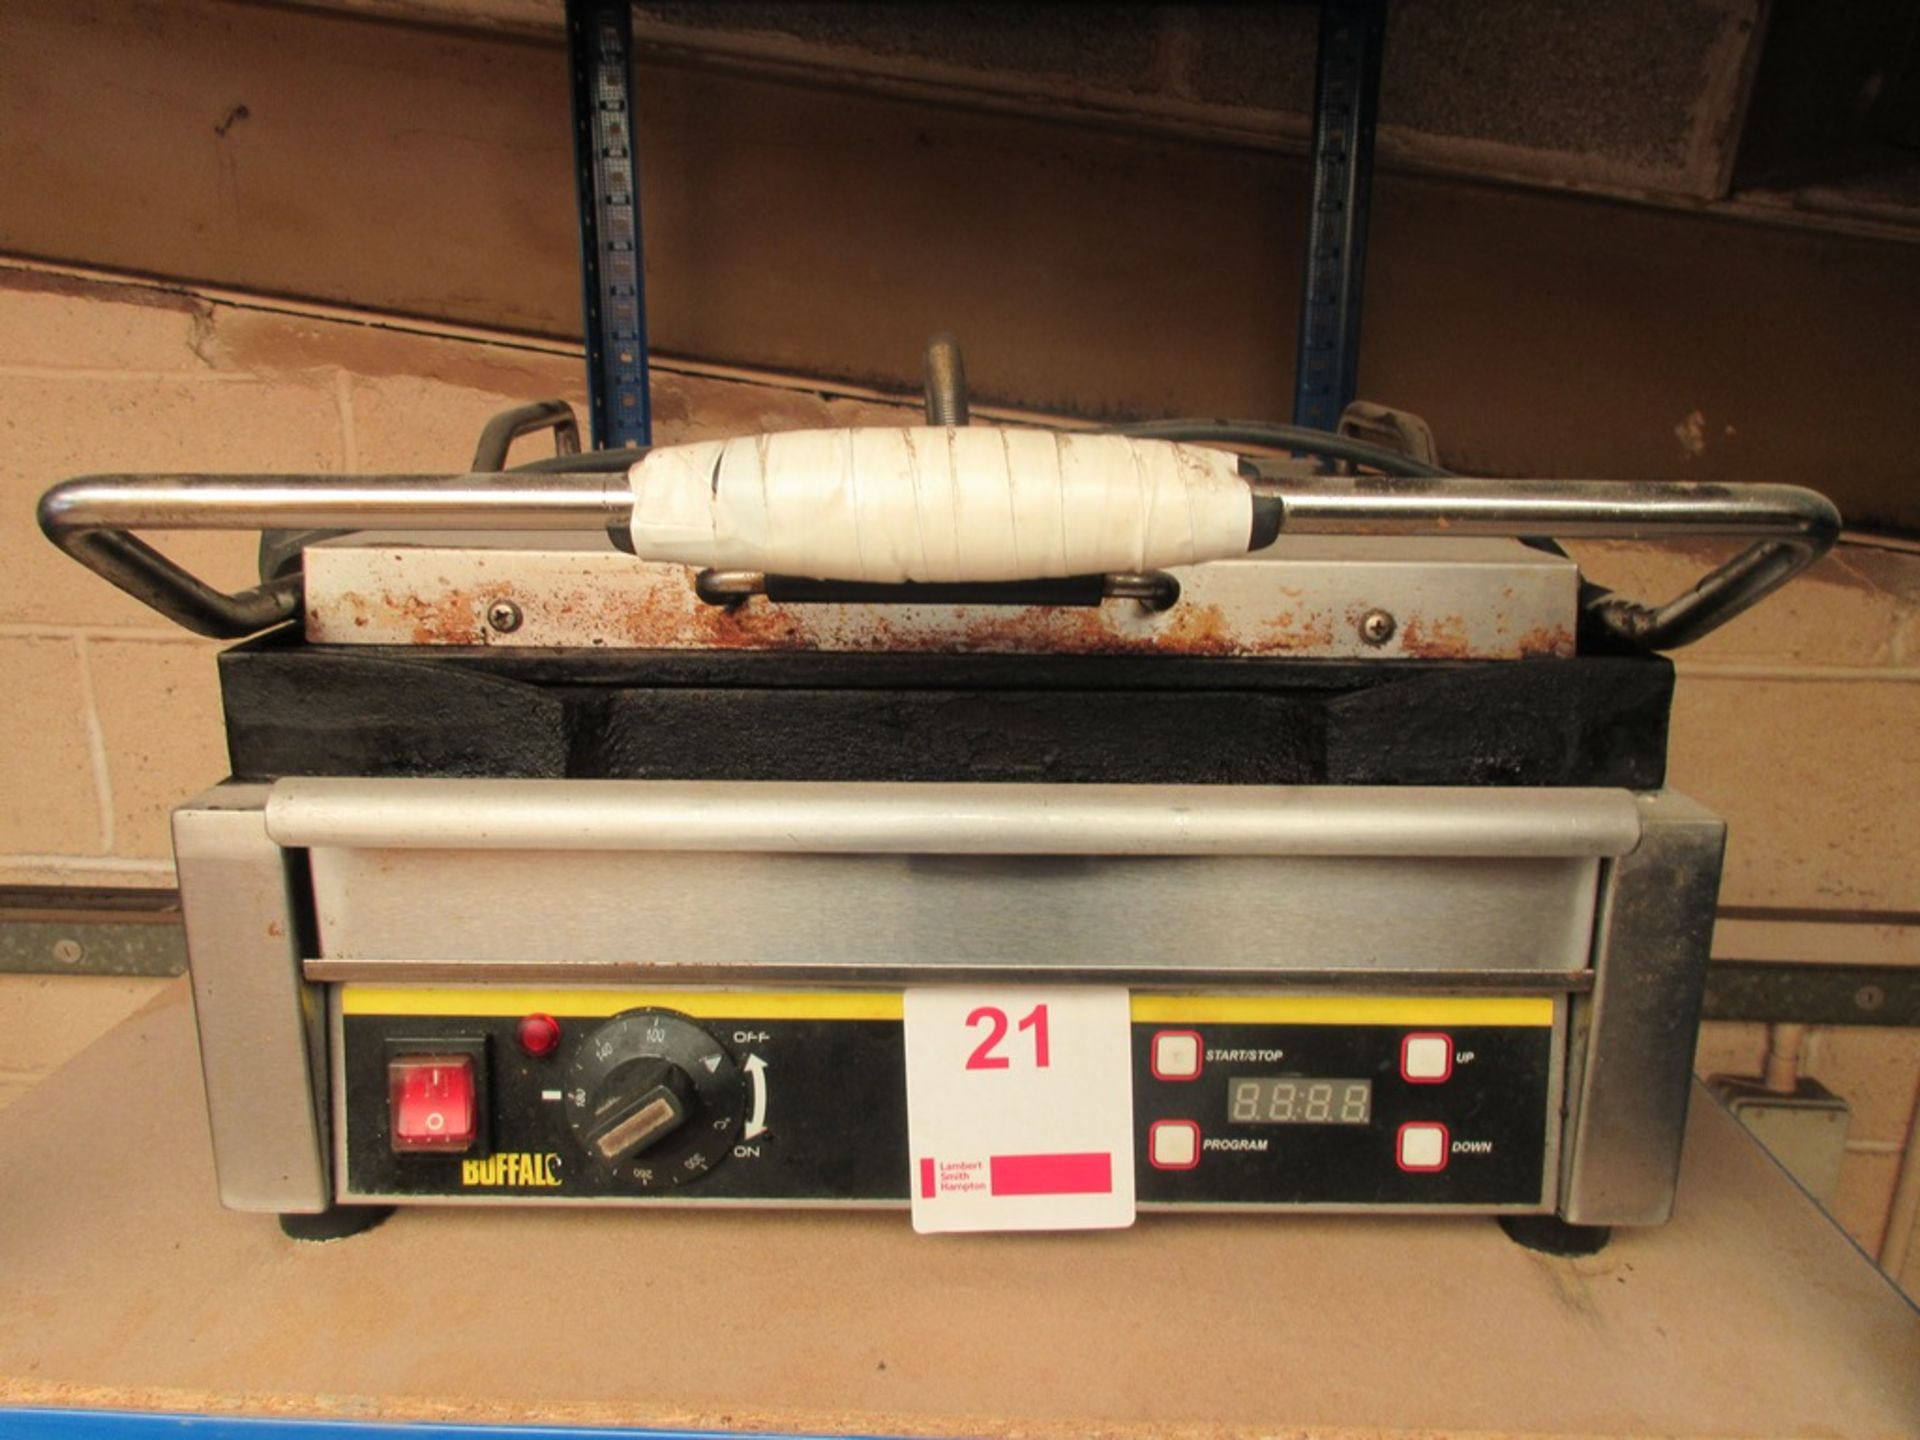 Buffalo bench top panini machine, model L519-B, serial no. 201410024784